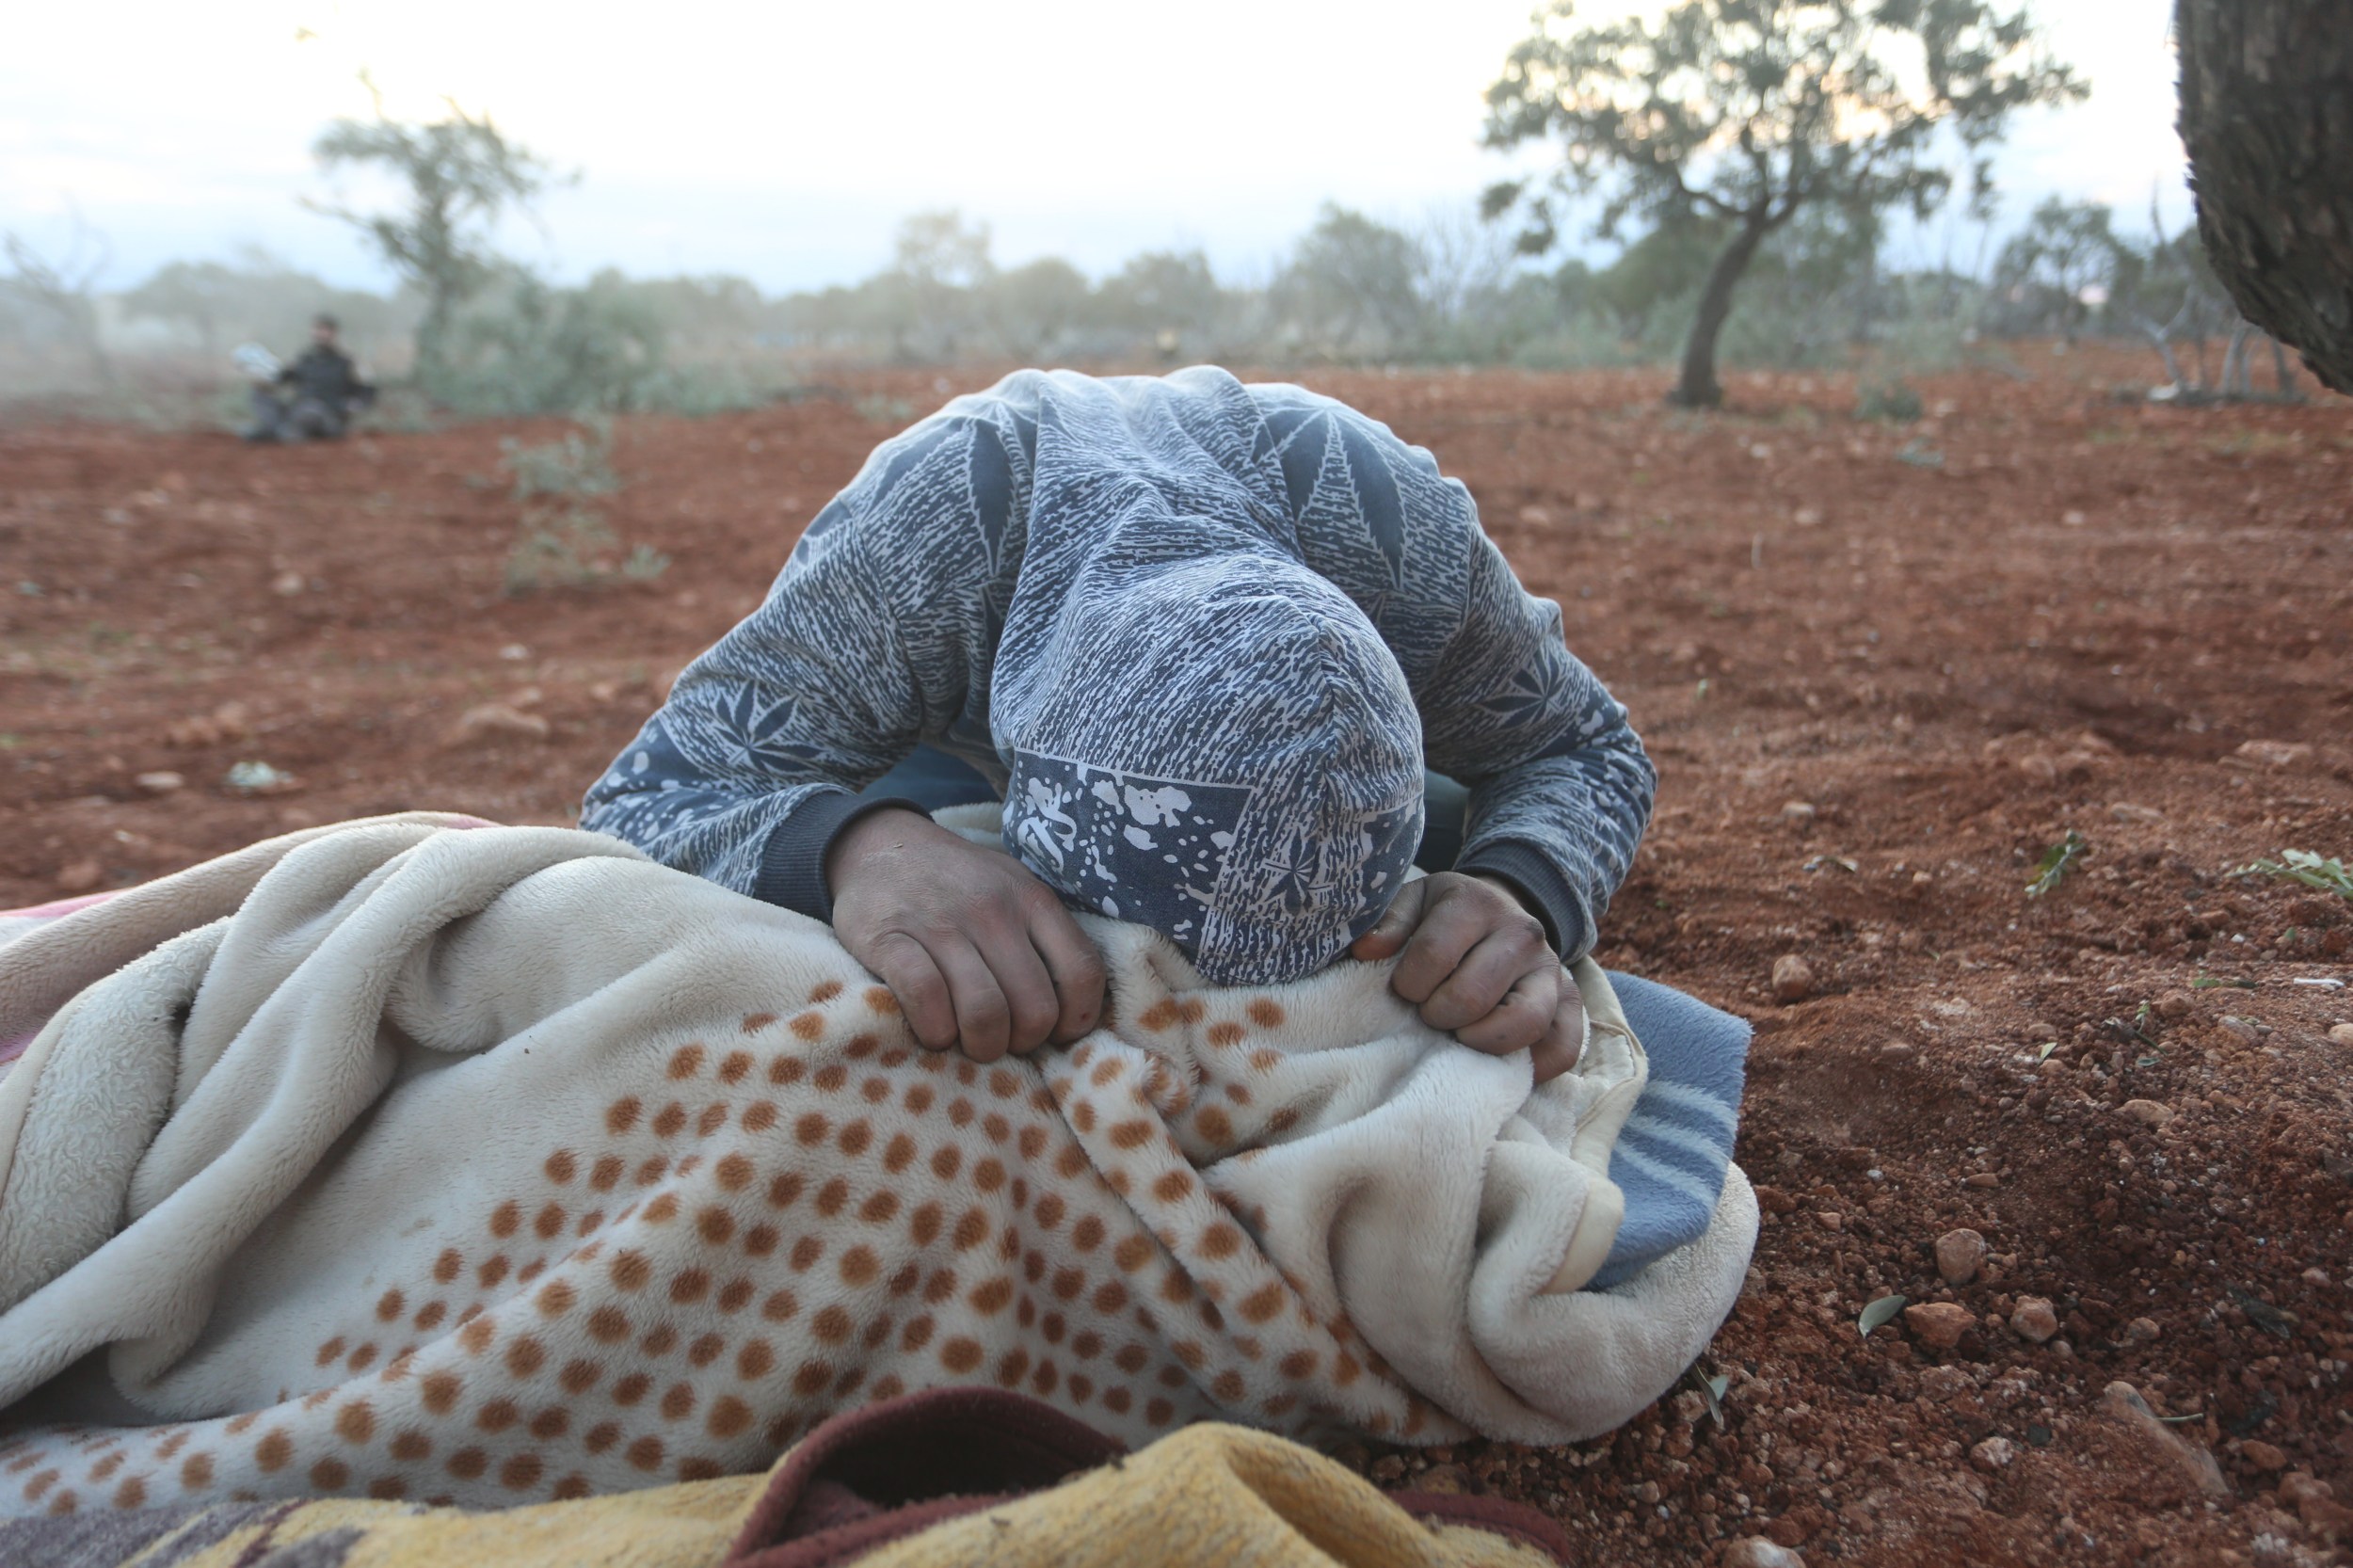 Un jeune Syrien pleure sur la dépouille d’un proche tué lors d’une frappe aérienne à Sarmin, dans la province d’Idleb, le 2 février (MEE/Ali Haj Suleiman)